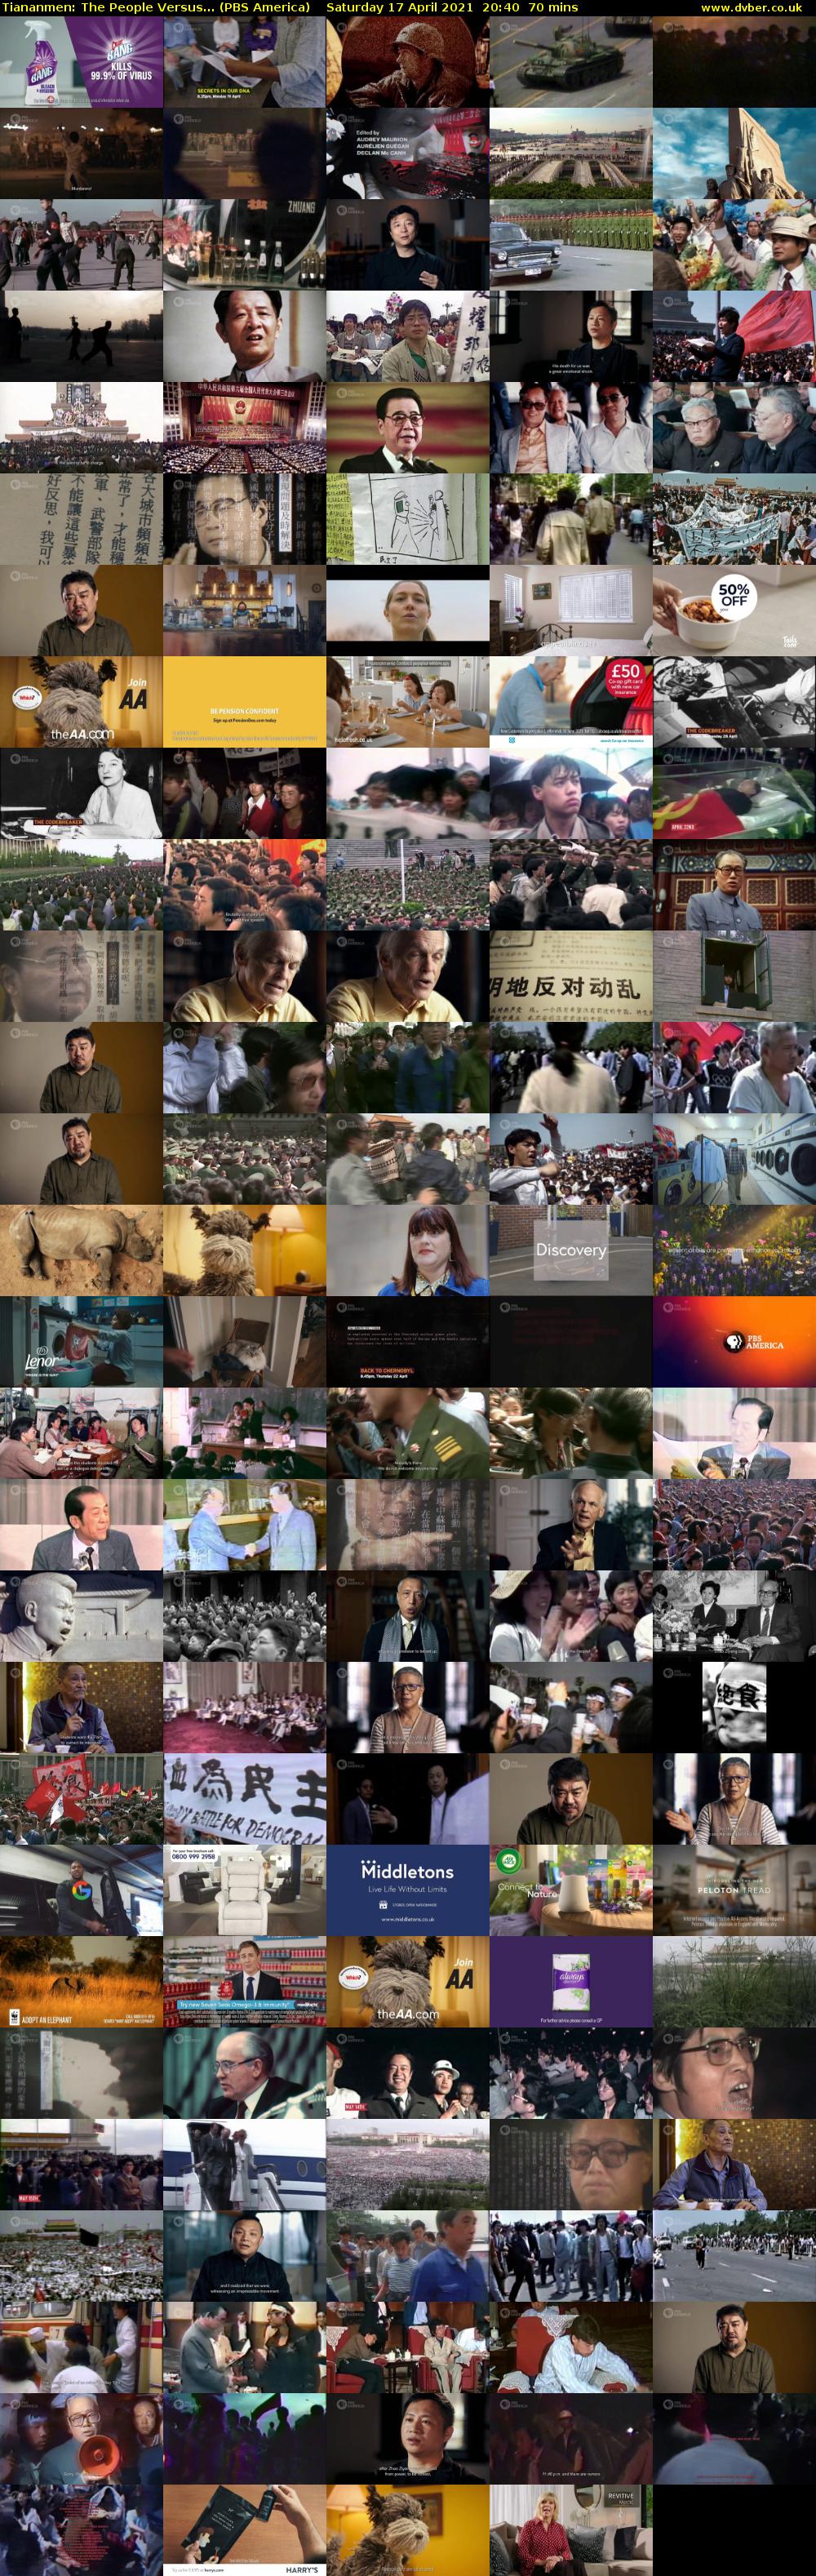 Tiananmen: The People Versus... (PBS America) Saturday 17 April 2021 20:40 - 21:50